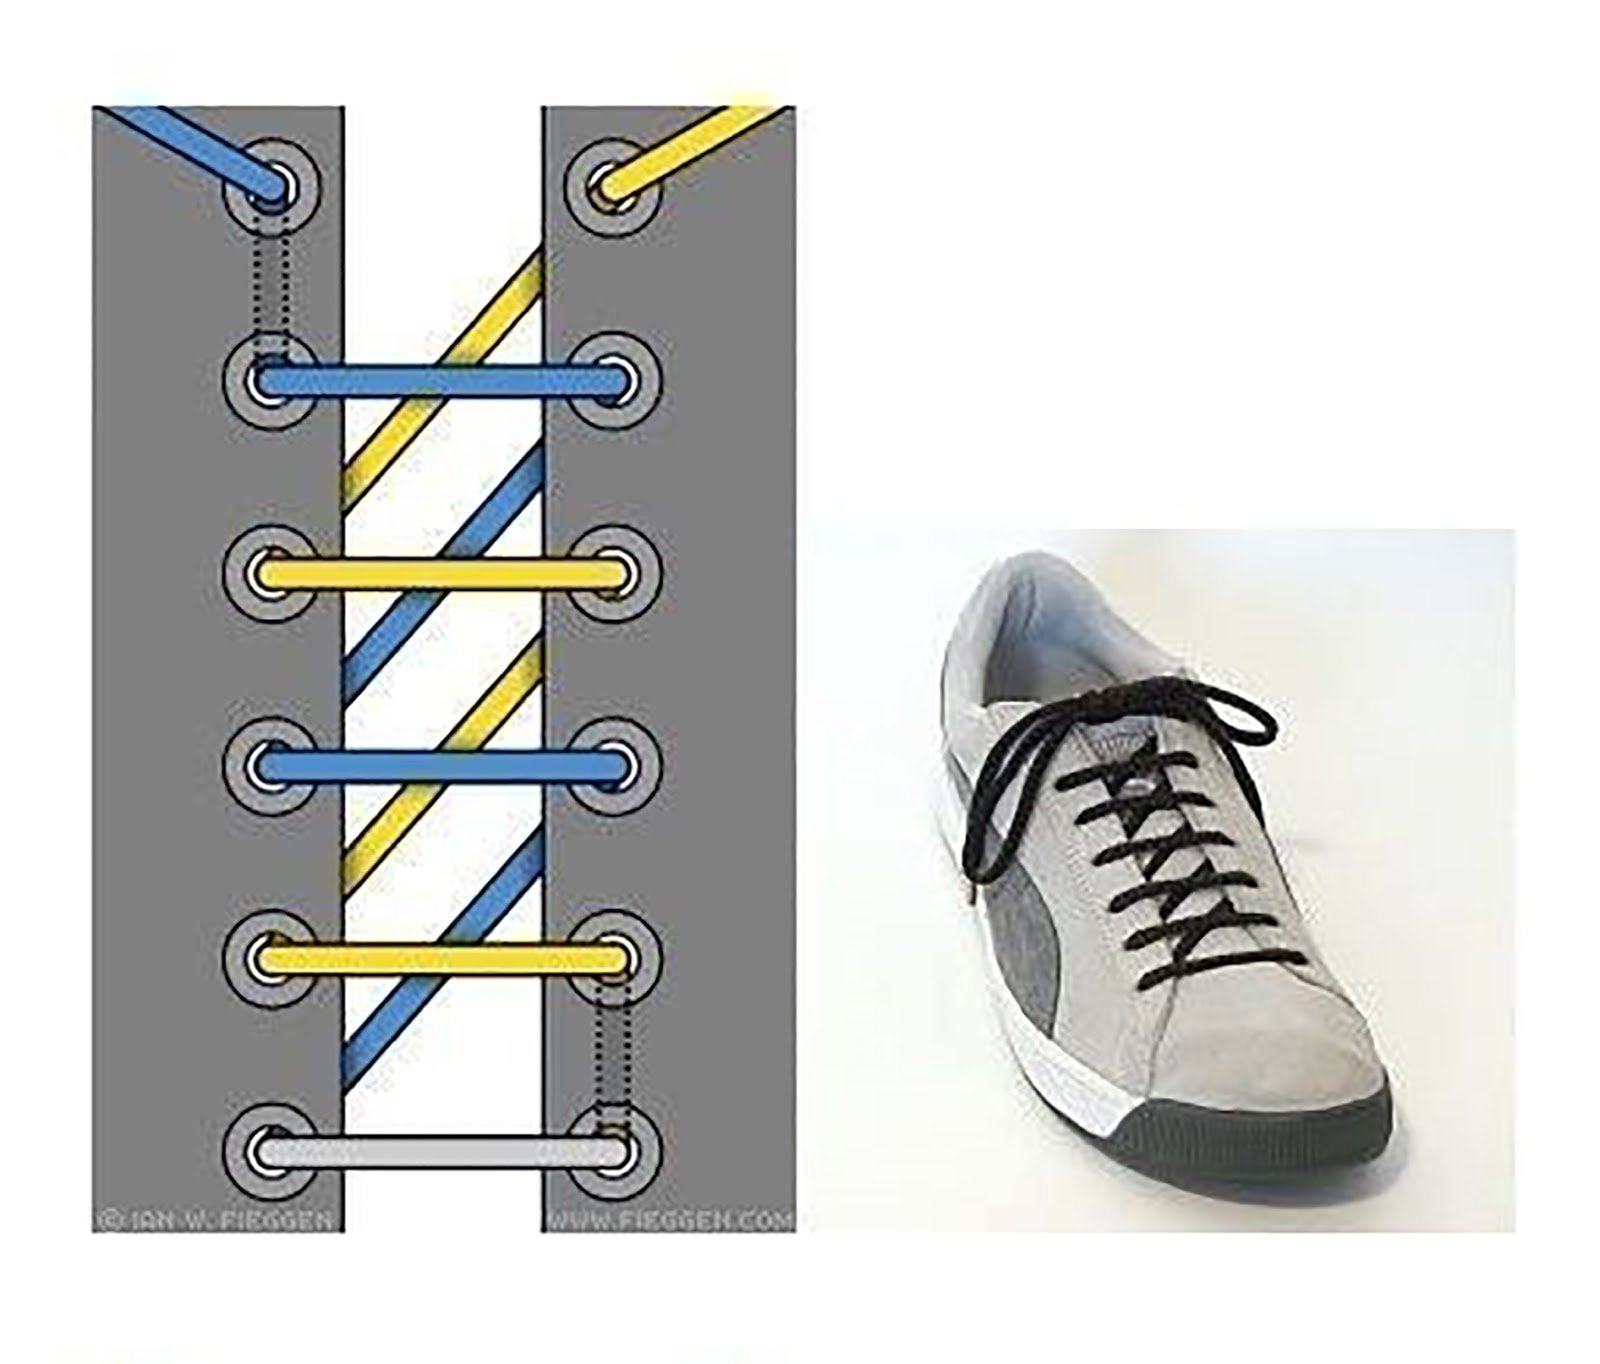 Прикольная шнуровка. Типы шнурования шнурков на 5 дырок. Шнурки зашнуровать 6 дырок. Способы завязывания шнурков на 5 дырок. Типы шнурования шнурков на 6 отверстий.